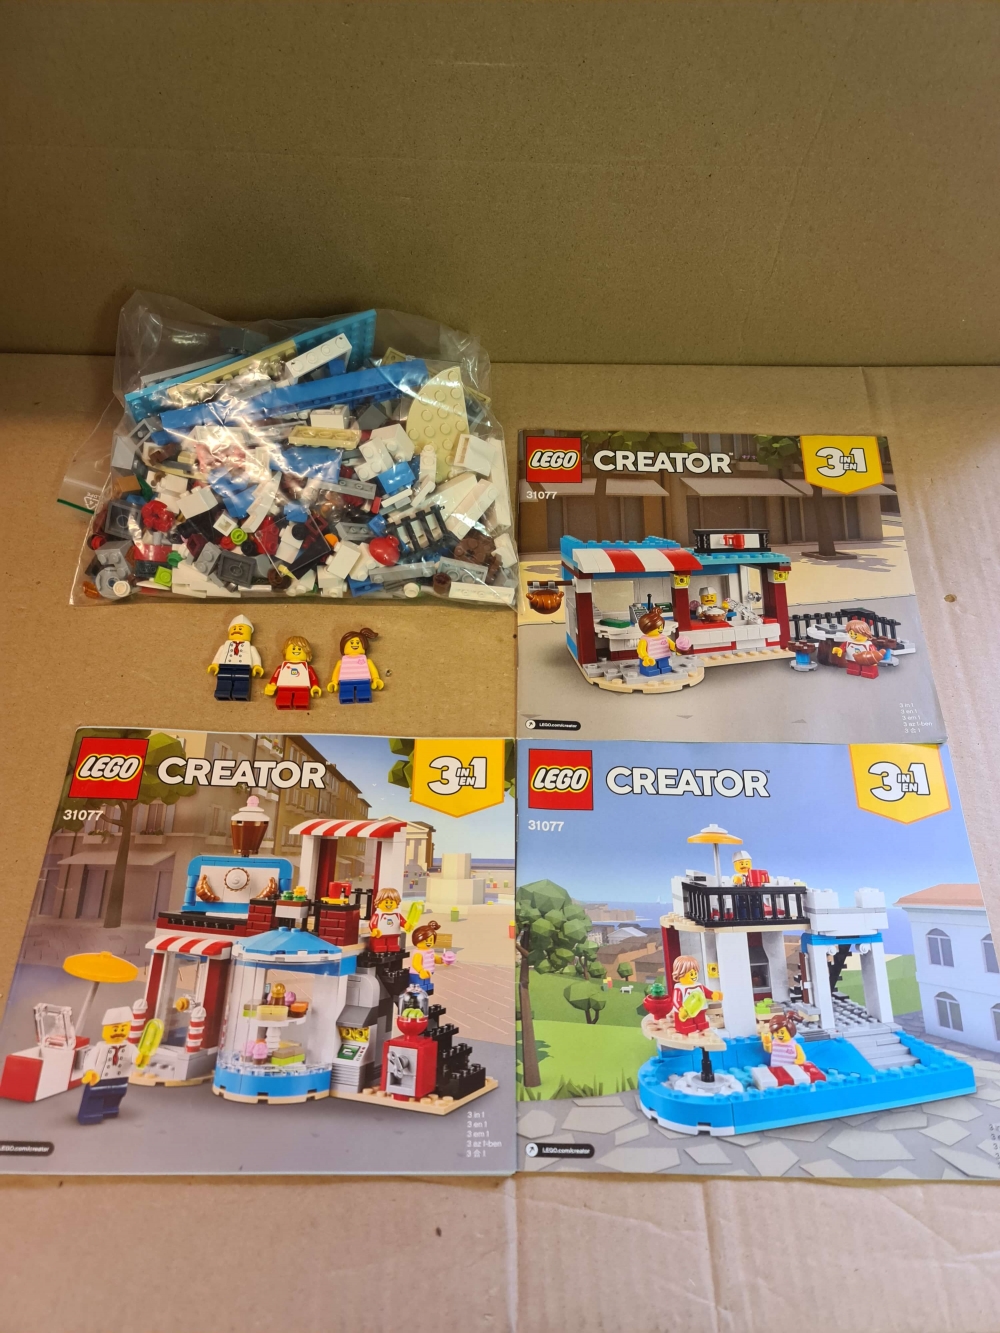 Sett 31077 fra Lego Creator serien.
Som nytt.
Komplett med manual og alle ekstradeler som fulgte med.